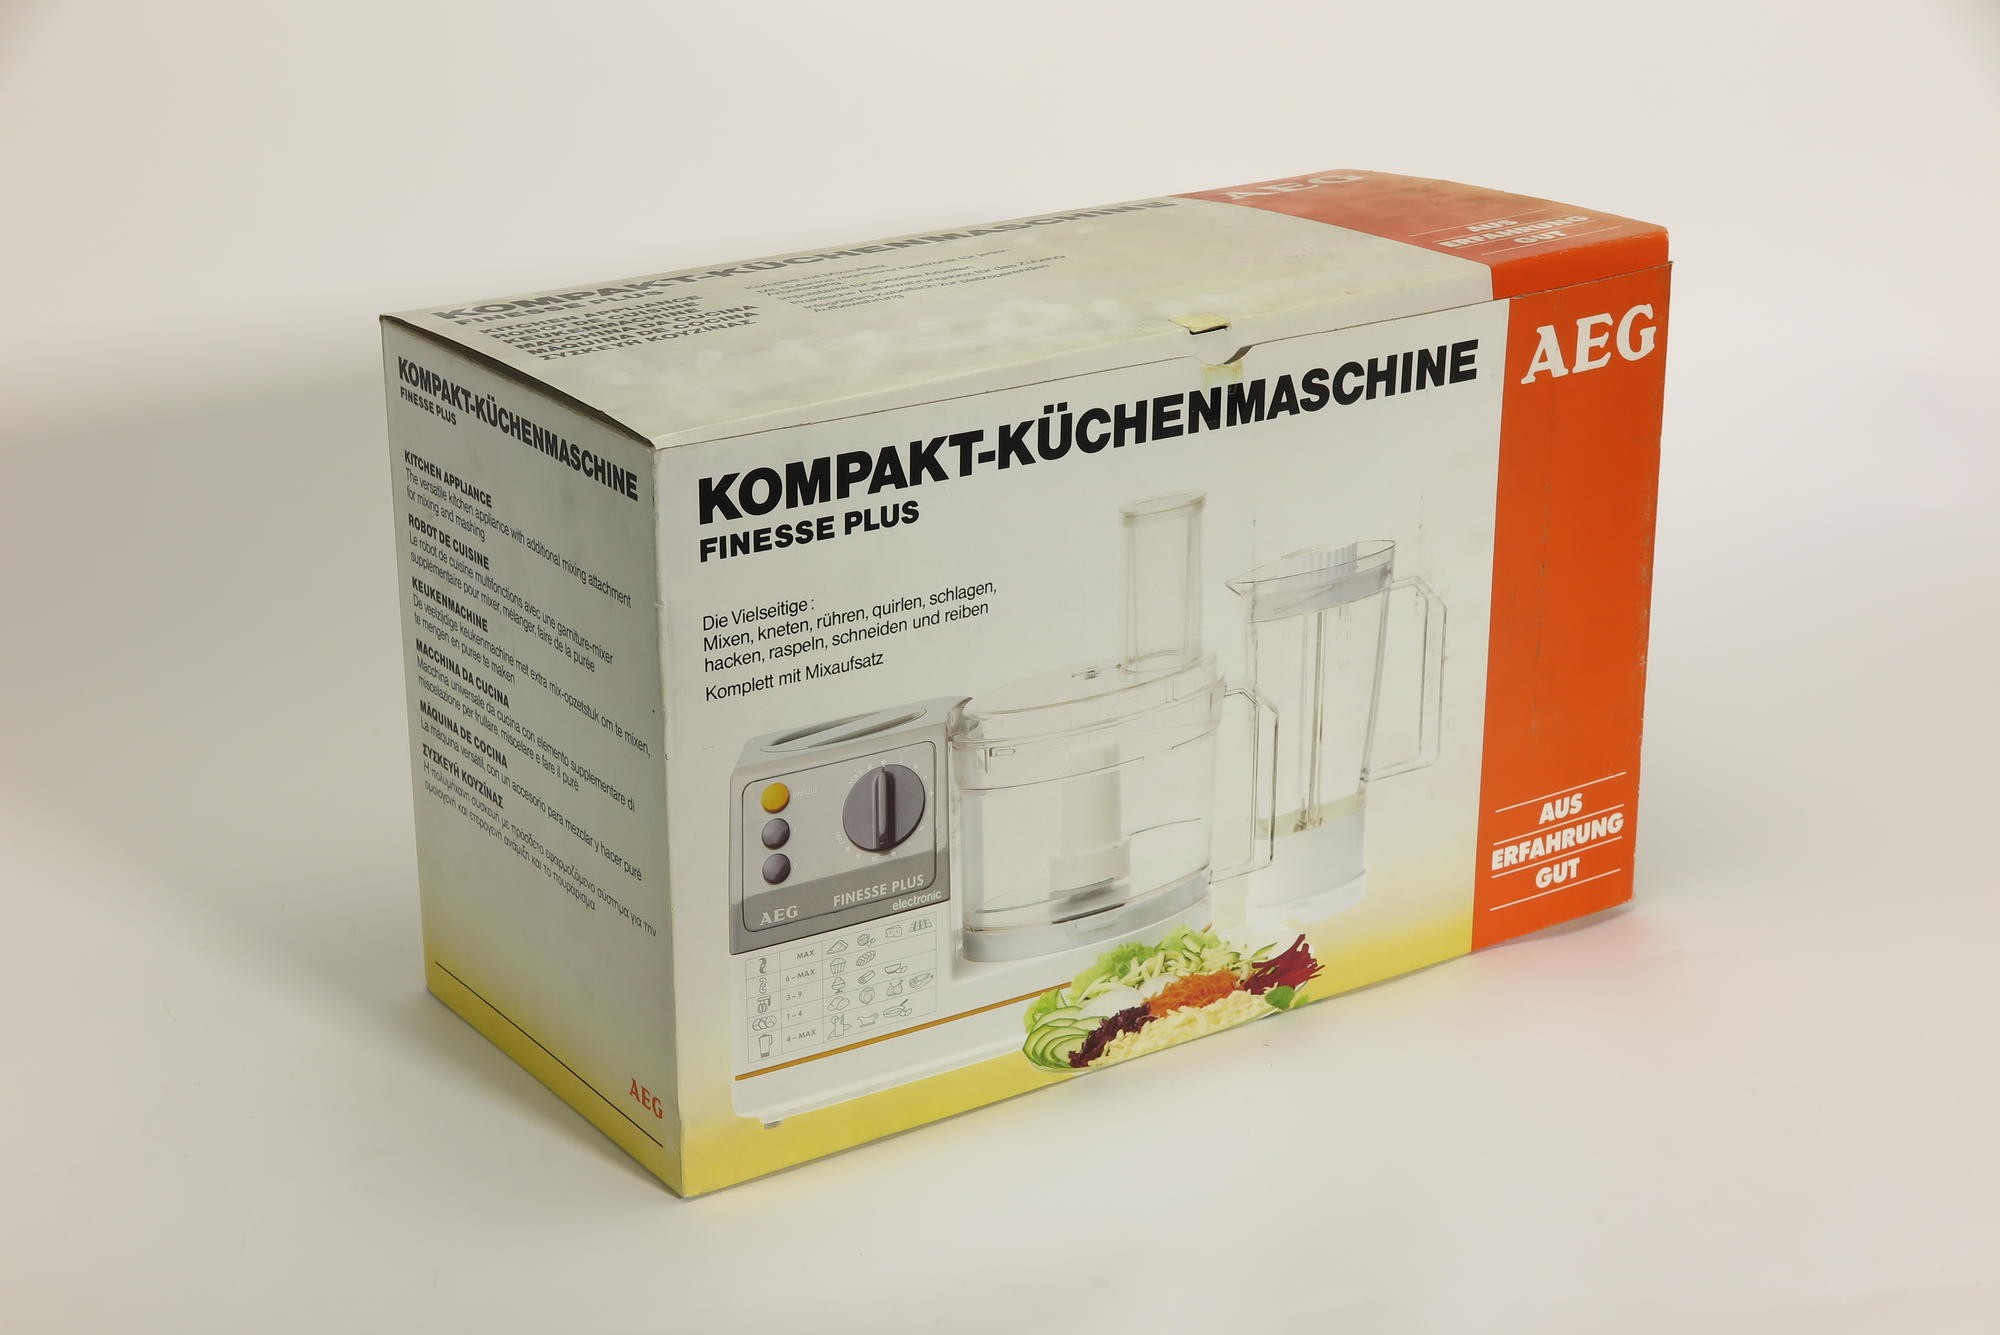 Verpackungskarton, Zubehör zu Kompakt-Küchenmaschine AEG KM 21 Typ EEM 0023 `FINESSE PLUS electronic` (Stiftung Deutsches Technikmuseum Berlin CC0)